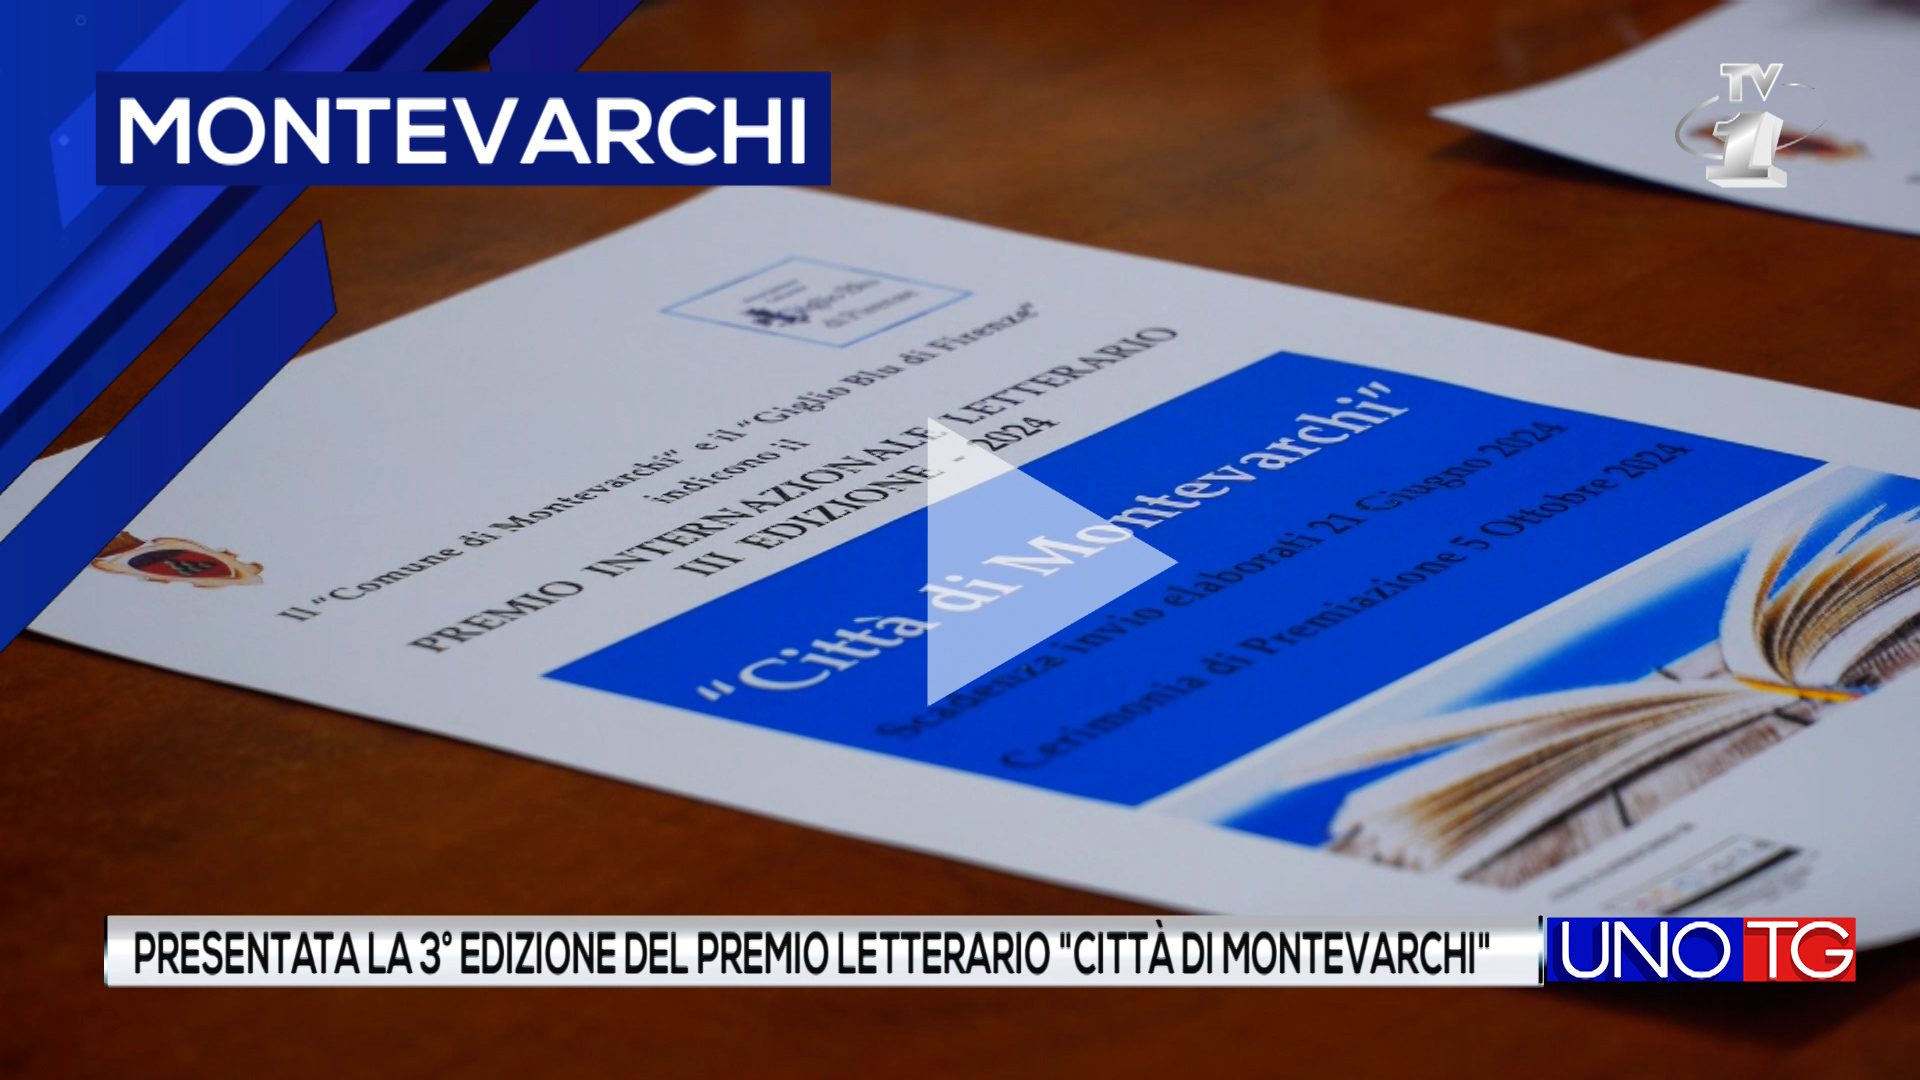 Presentata la 3° edizione del premio letterario "Città di Montevarchi".